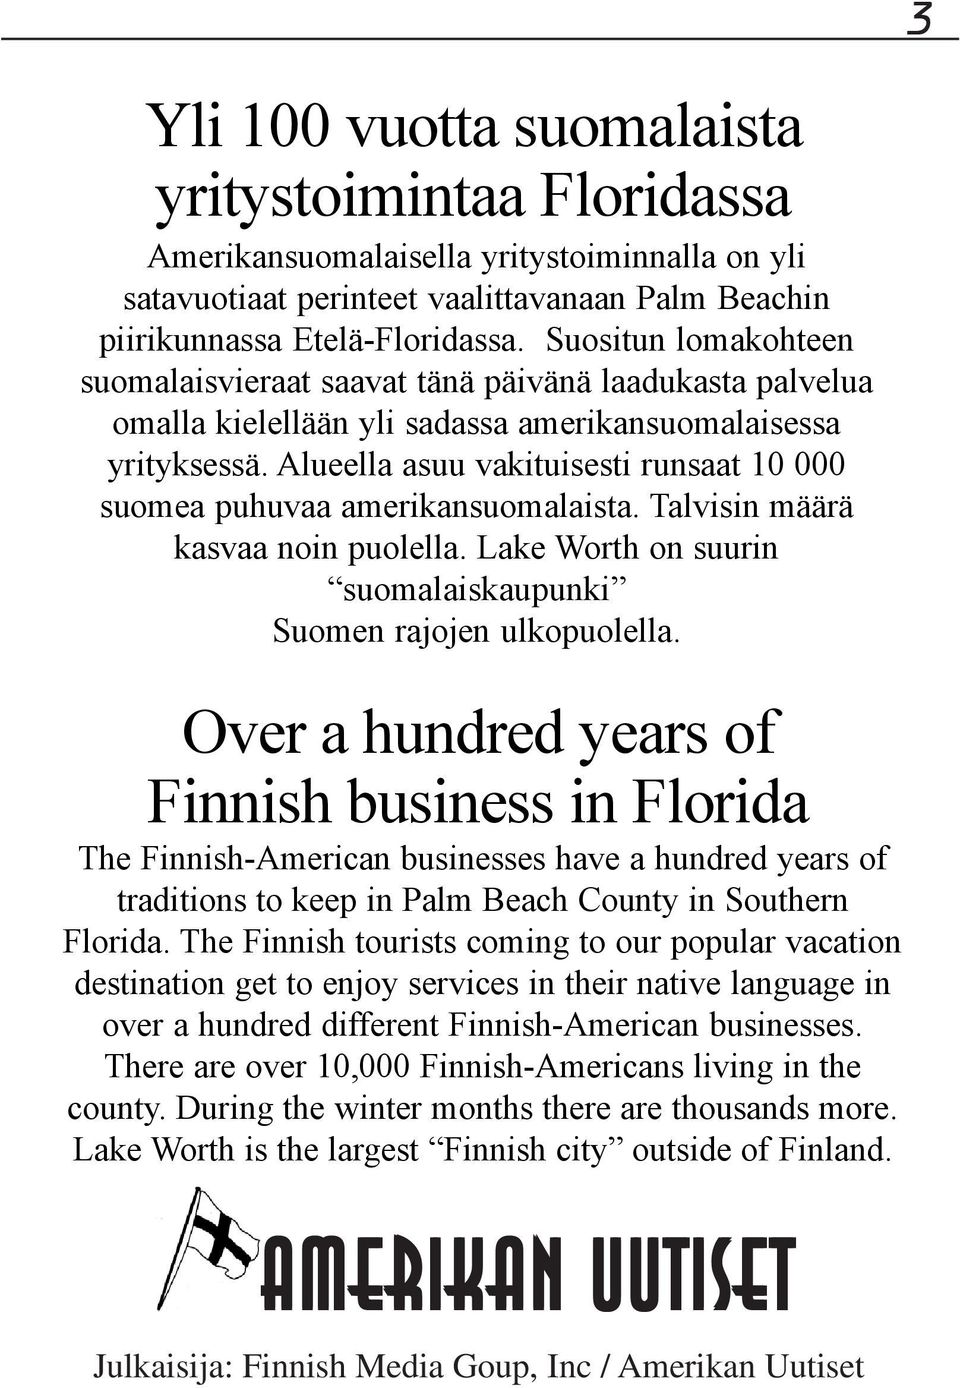 Alueella asuu vakituisesti runsaat 10 000 suomea puhuvaa amerikansuomalaista. Talvisin määrä kasvaa noin puolella. Lake Worth on suurin suomalaiskaupunki Suomen rajojen ulkopuolella.